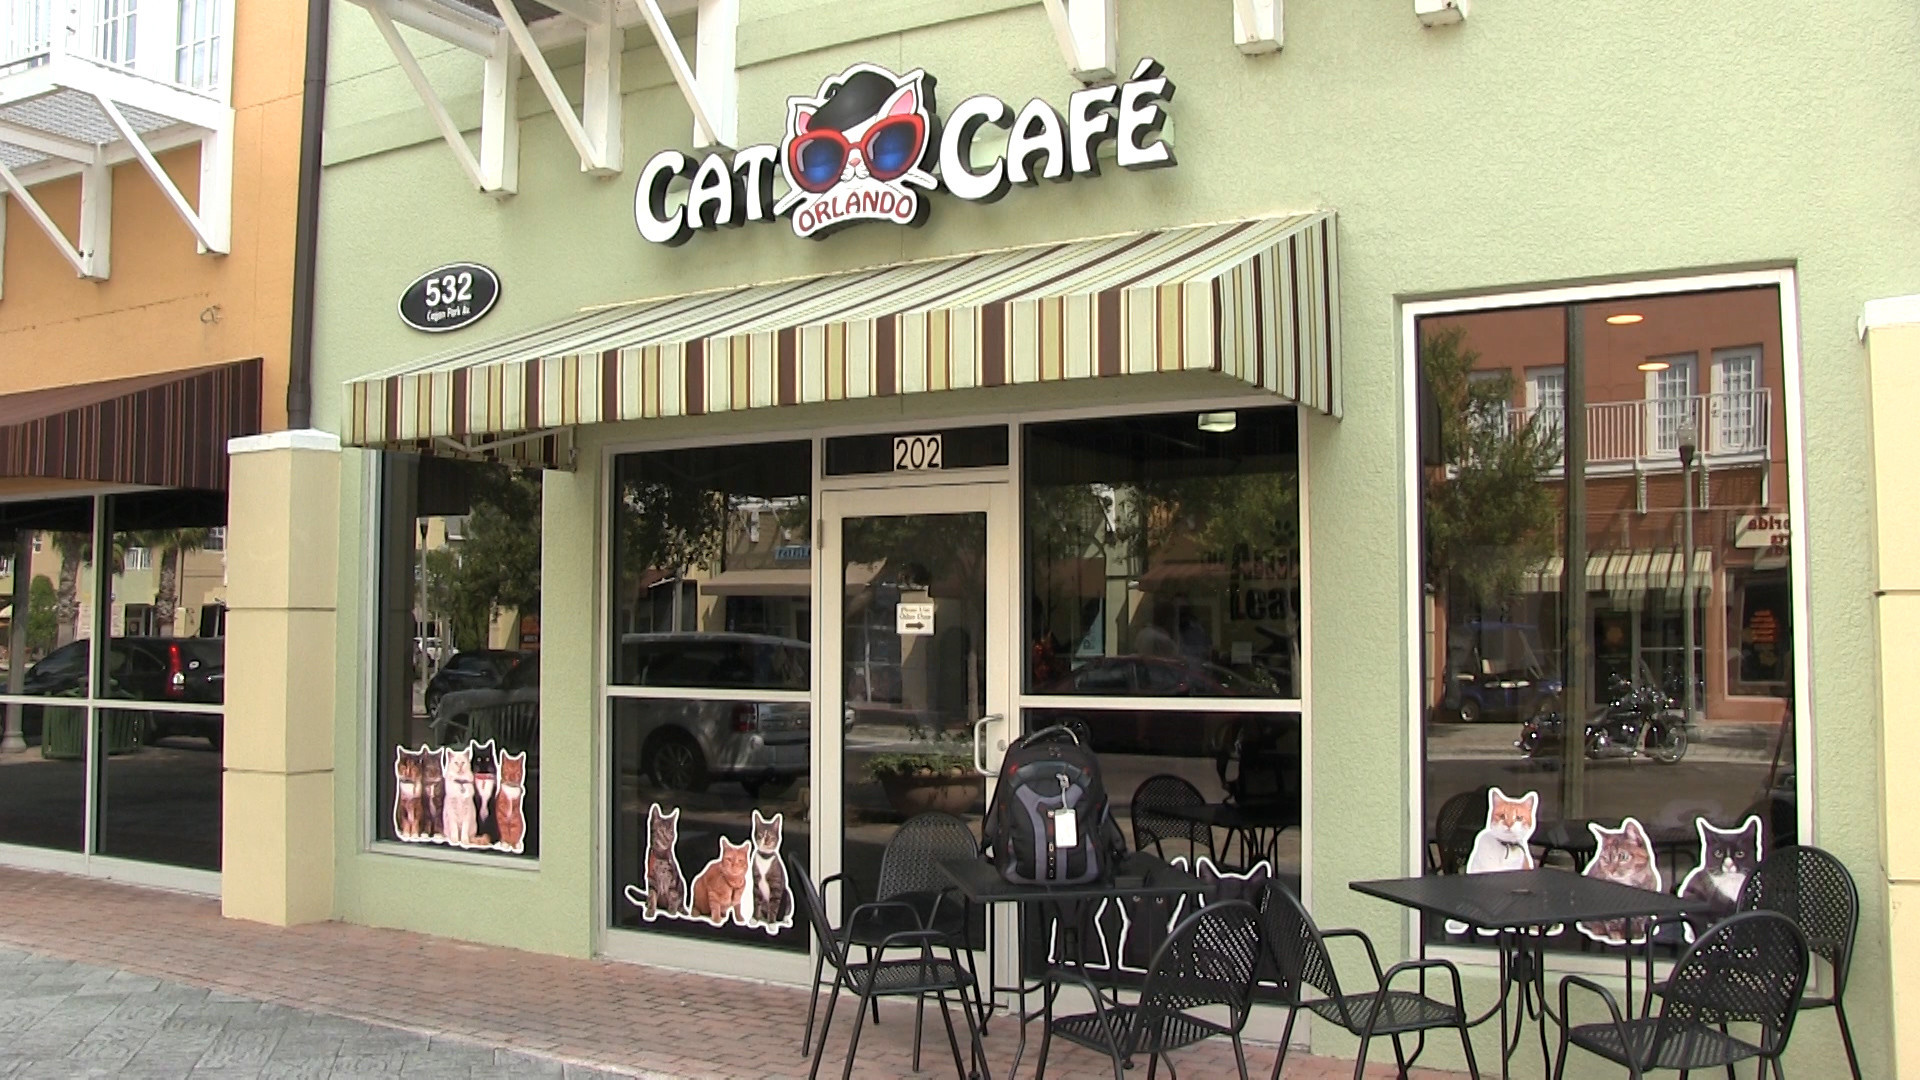 Cat café opens near Orlando - Orlando Sentinel